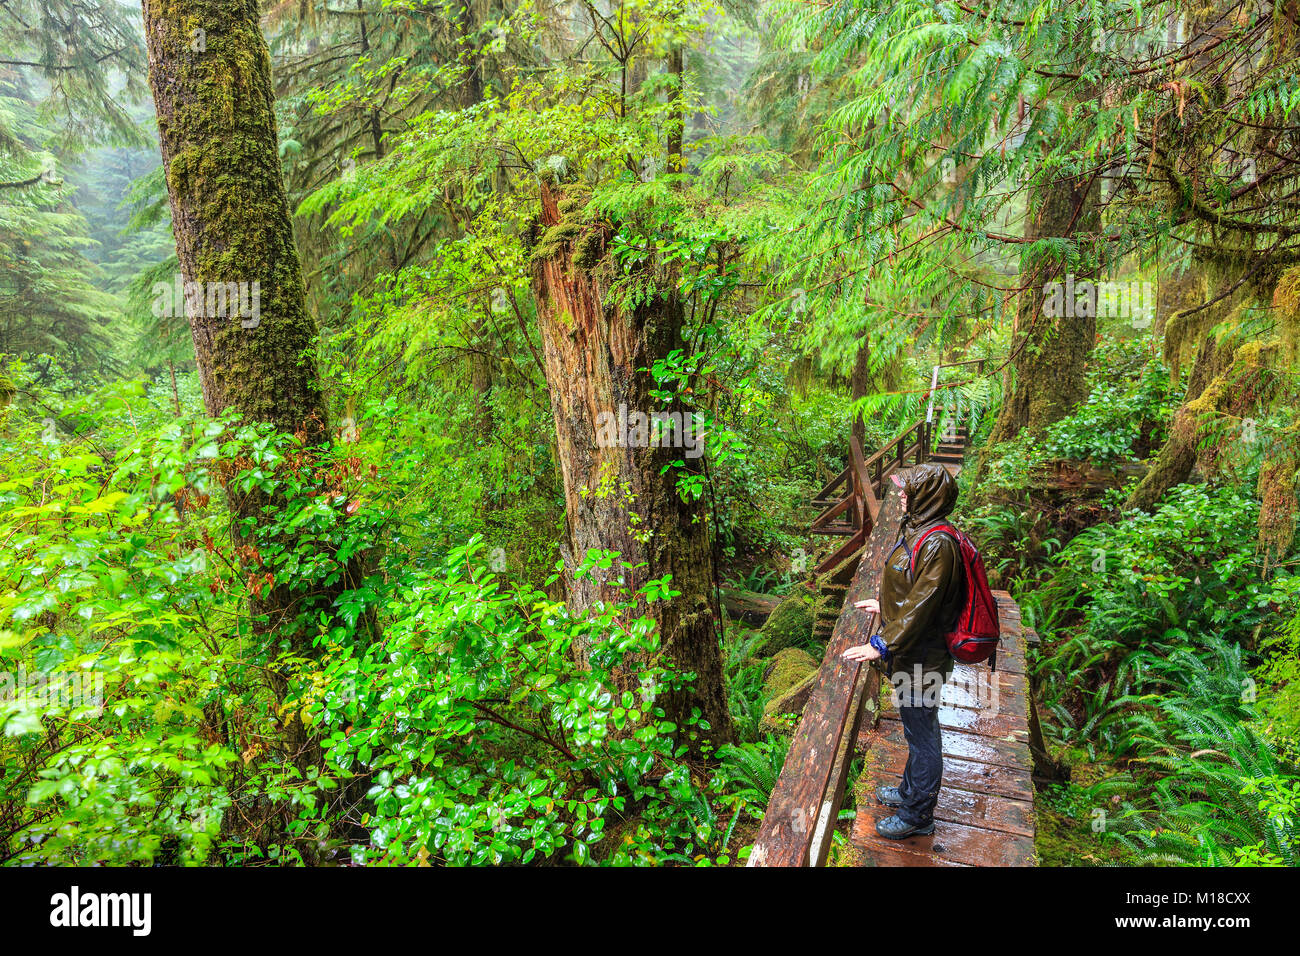 Le sentier de randonnée femme forêt tropicale, parc national Pacific Rim, l'île de Vancouver, Colombie-Britannique, Canada. Banque D'Images